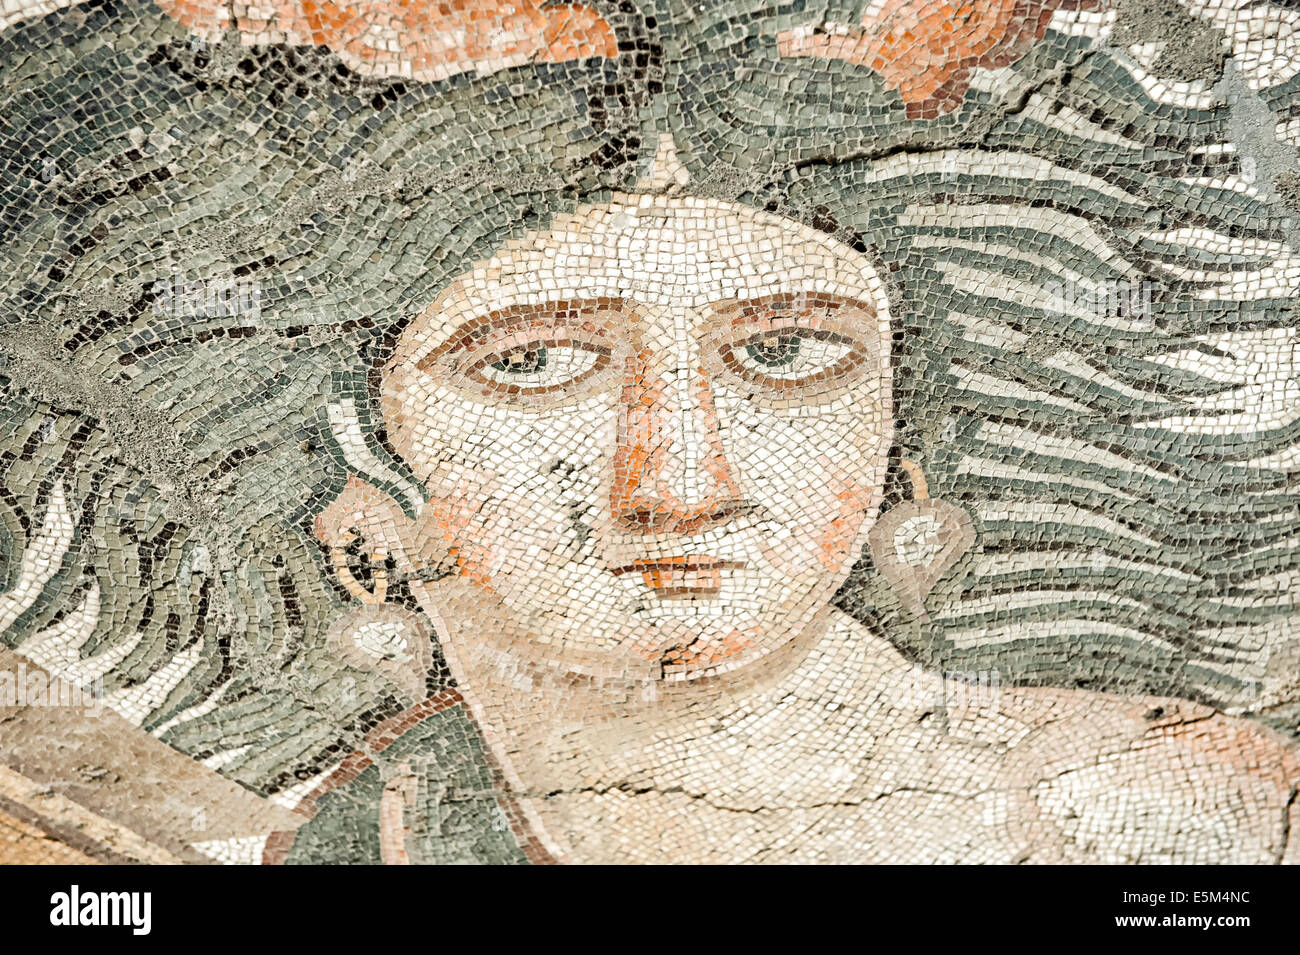 Thalassa mosaic, Yakto, 5% A.C., Museo de Arqueología de Hatay, Antioquía, provincia de Hatay, en el suroeste de Turquía Foto de stock